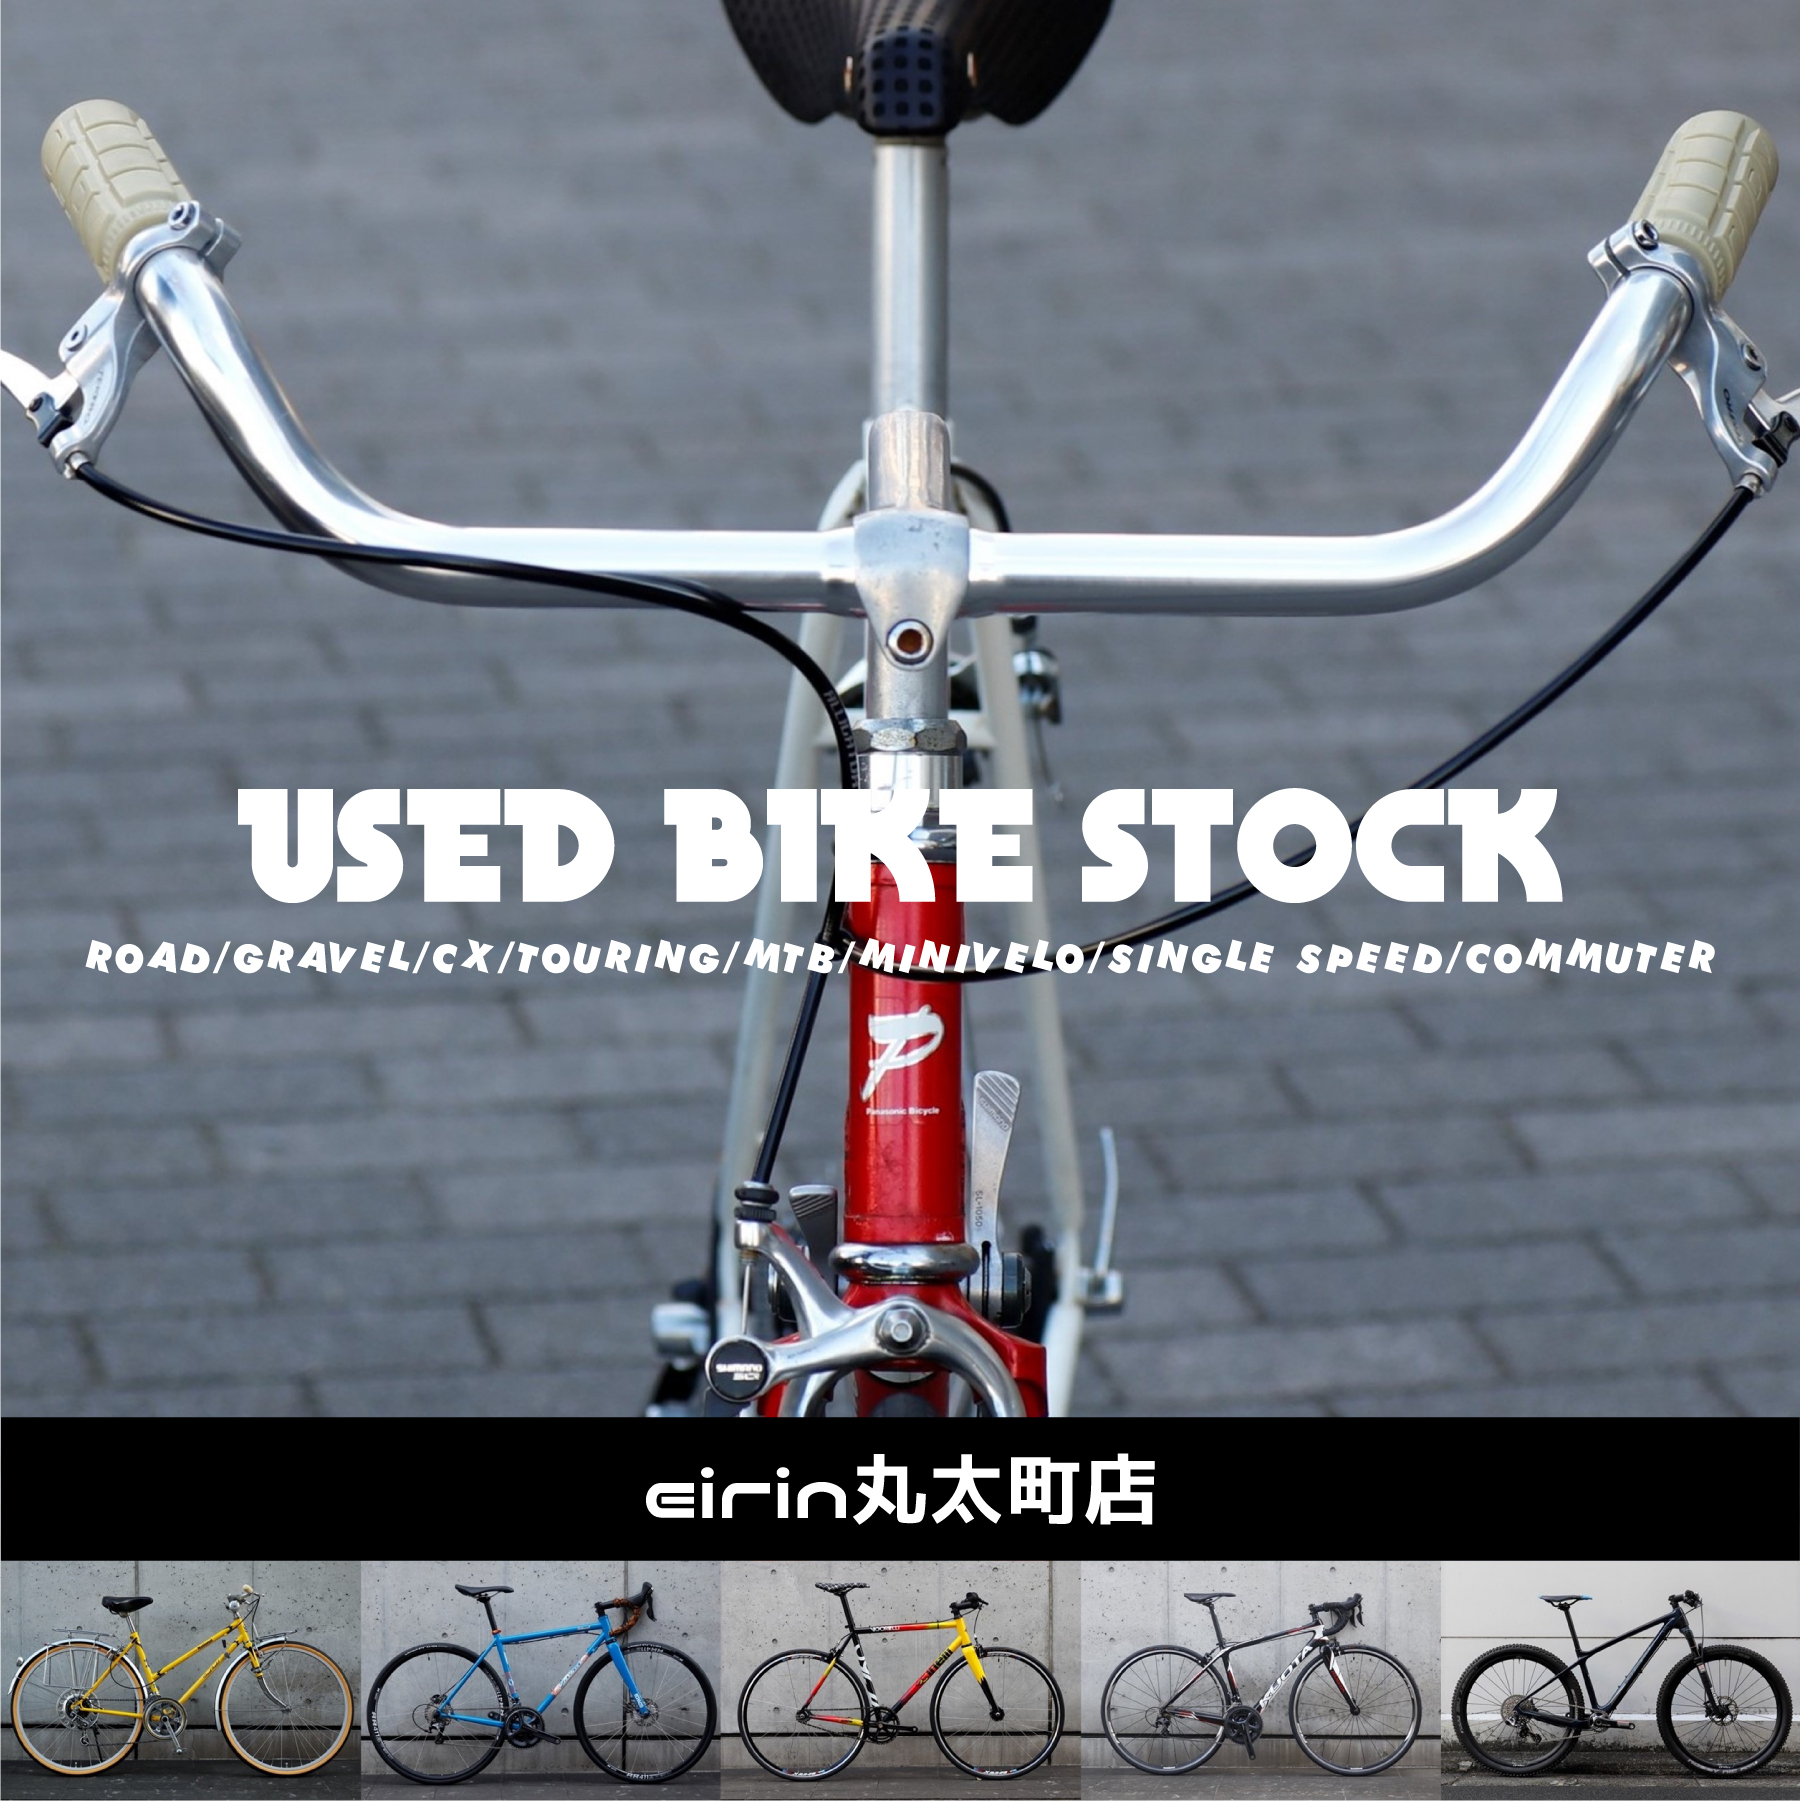 22年3月更新 中古 アウトレット スポーツサイクル ロードバイク グラベル シクロクロス ツーリングバイク クロス ミニベロ ピスト の在庫状況をまとめてご紹介 京都の中古自転車 新車販売 サイクルショップ エイリン